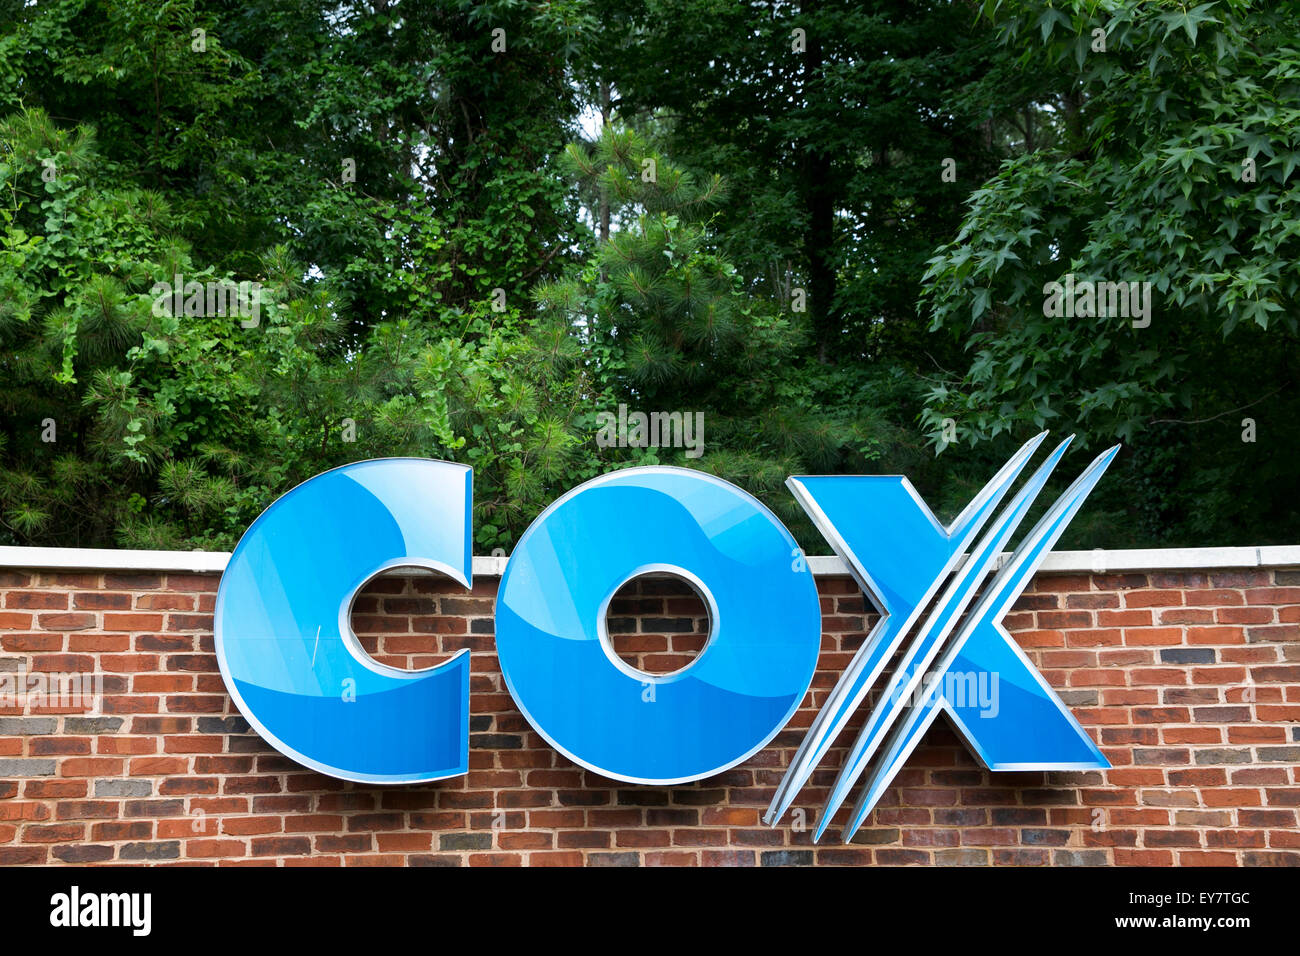 Ein Logo Zeichen außerhalb einer Einrichtung von Cox Communications, Inc., in Chesapeake, Virginia am 18. Juli 2015 besetzt. Stockfoto